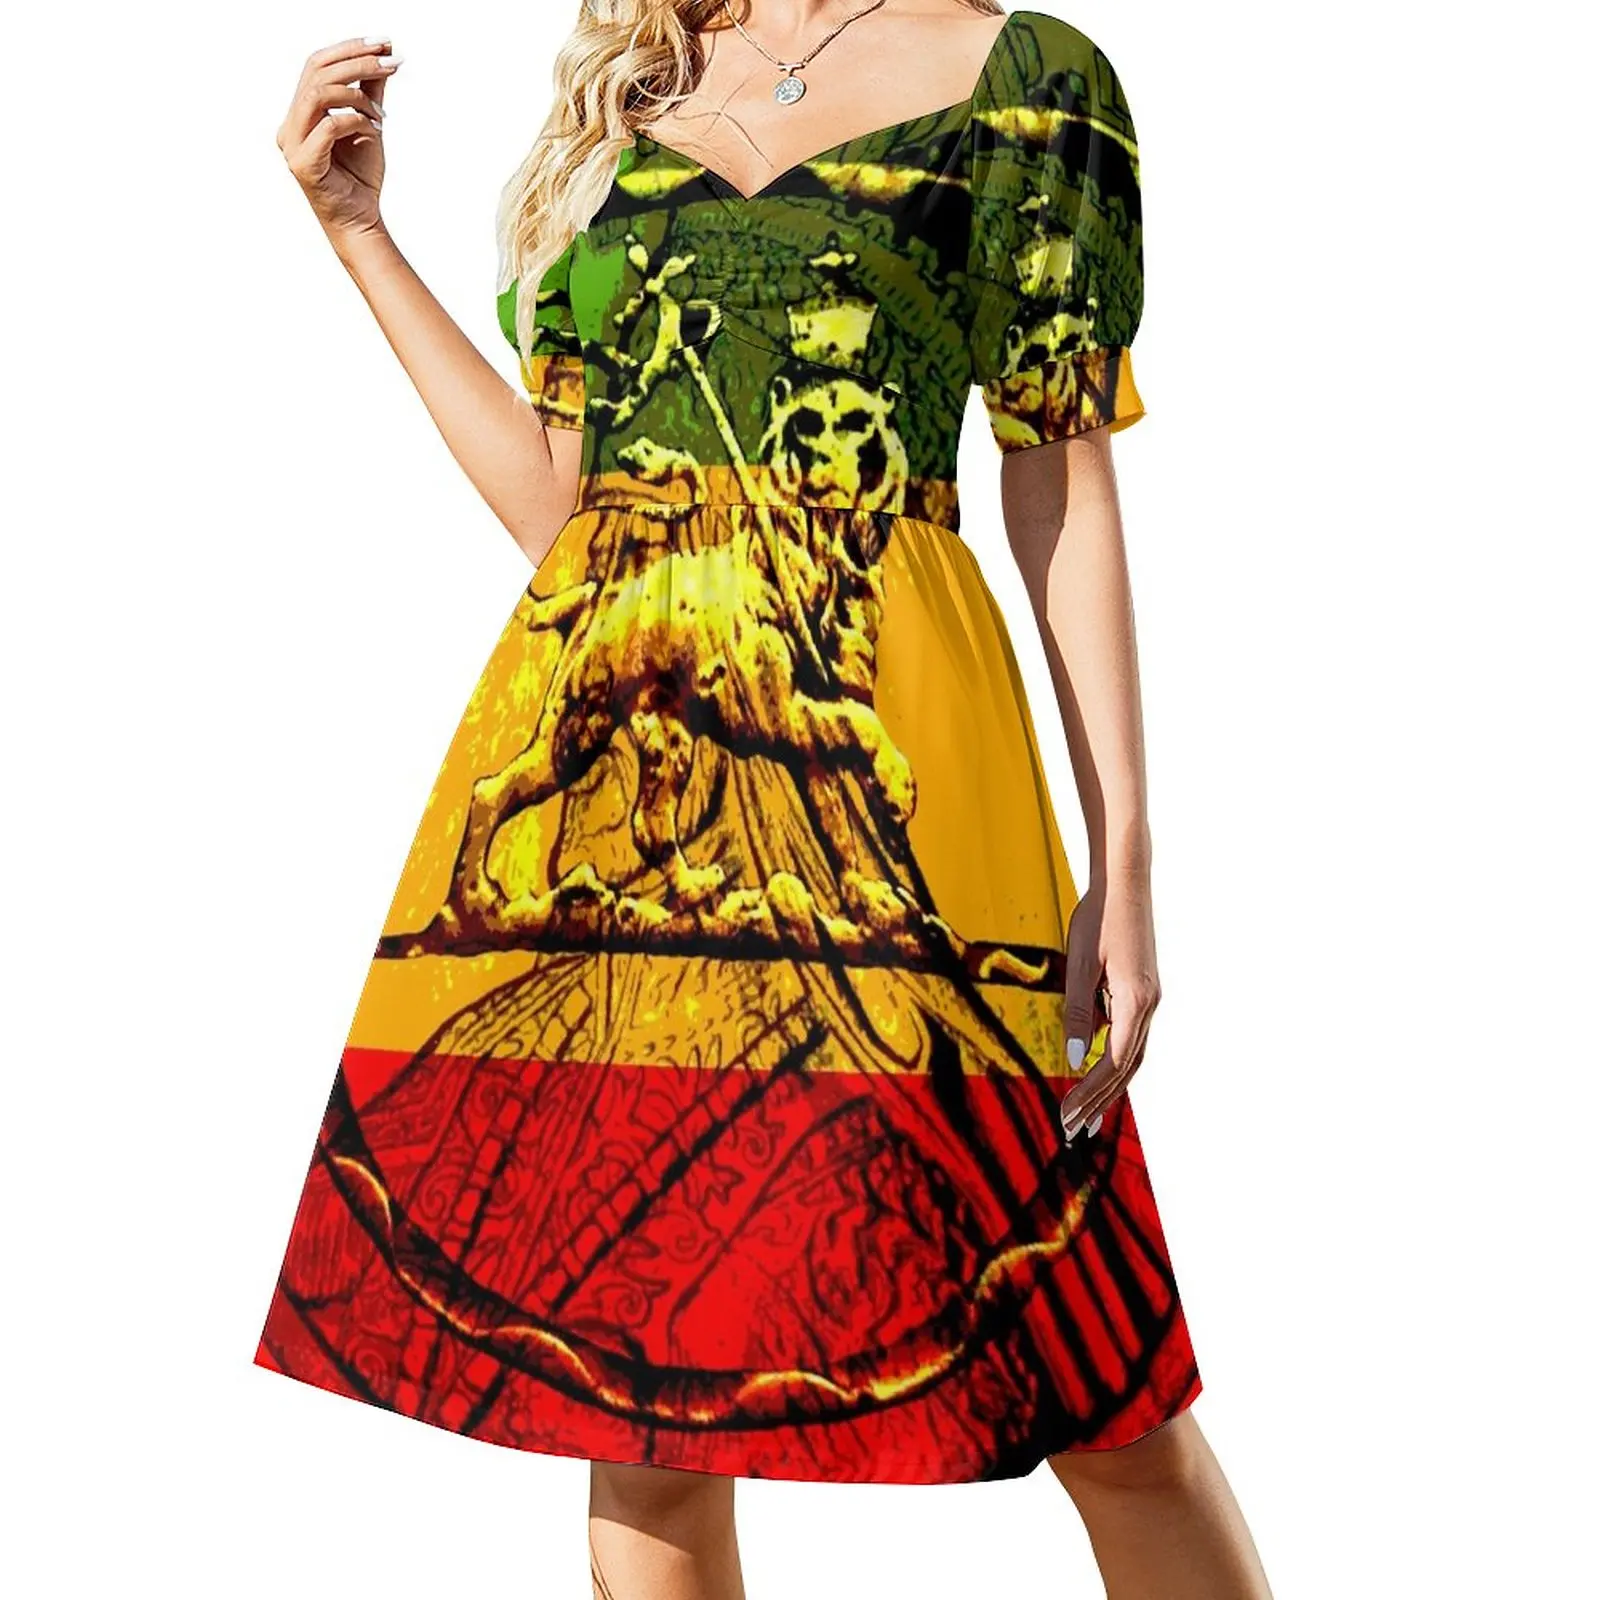 

Платье Rasta Lion of juah без рукавов, женский летний костюм, женская одежда, платья для торжественных случаев